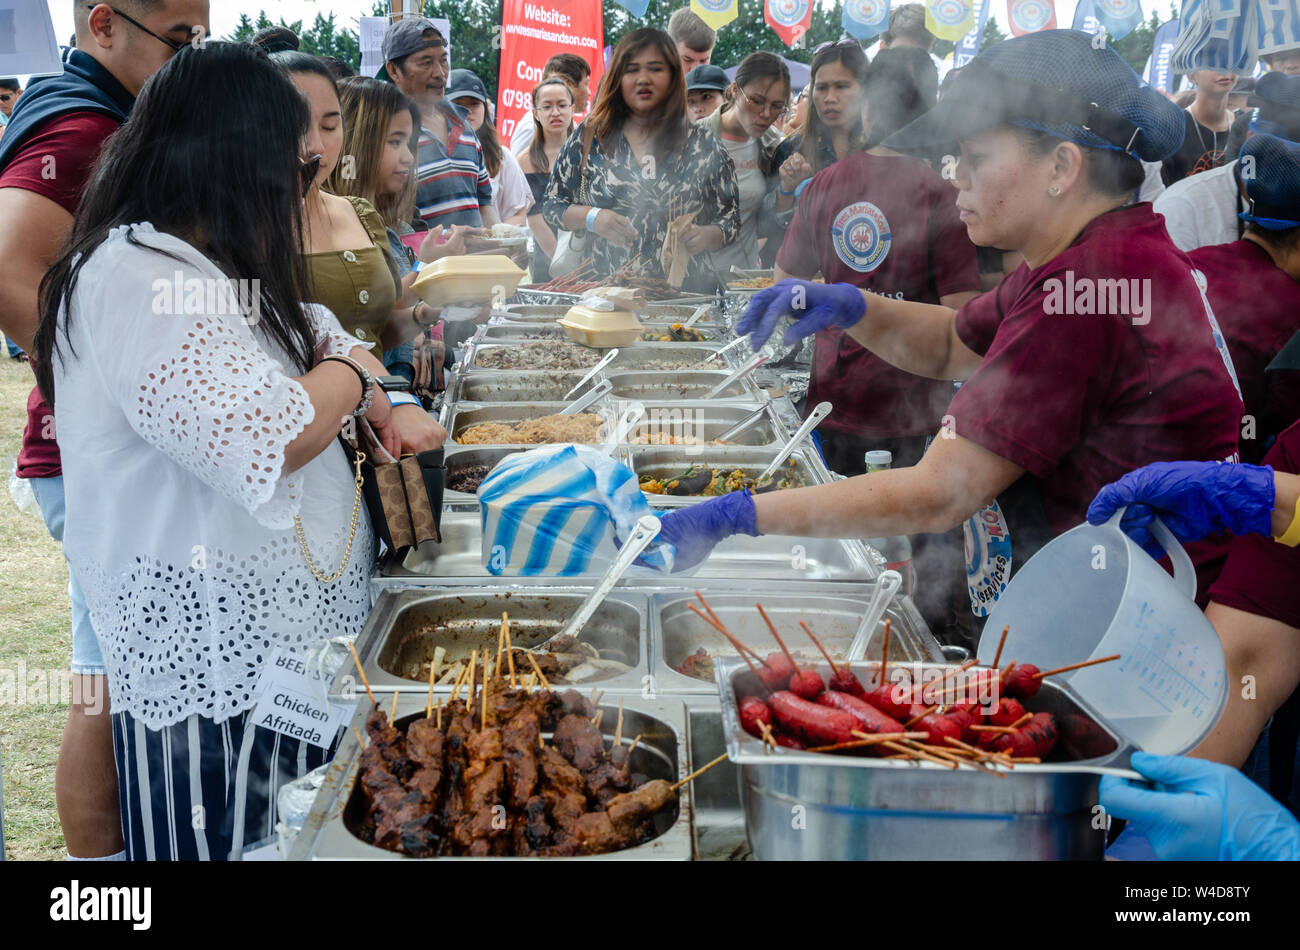 Ein Stall verkaufen filipino Street Food bei einer Veranstaltung in London. Stockfoto